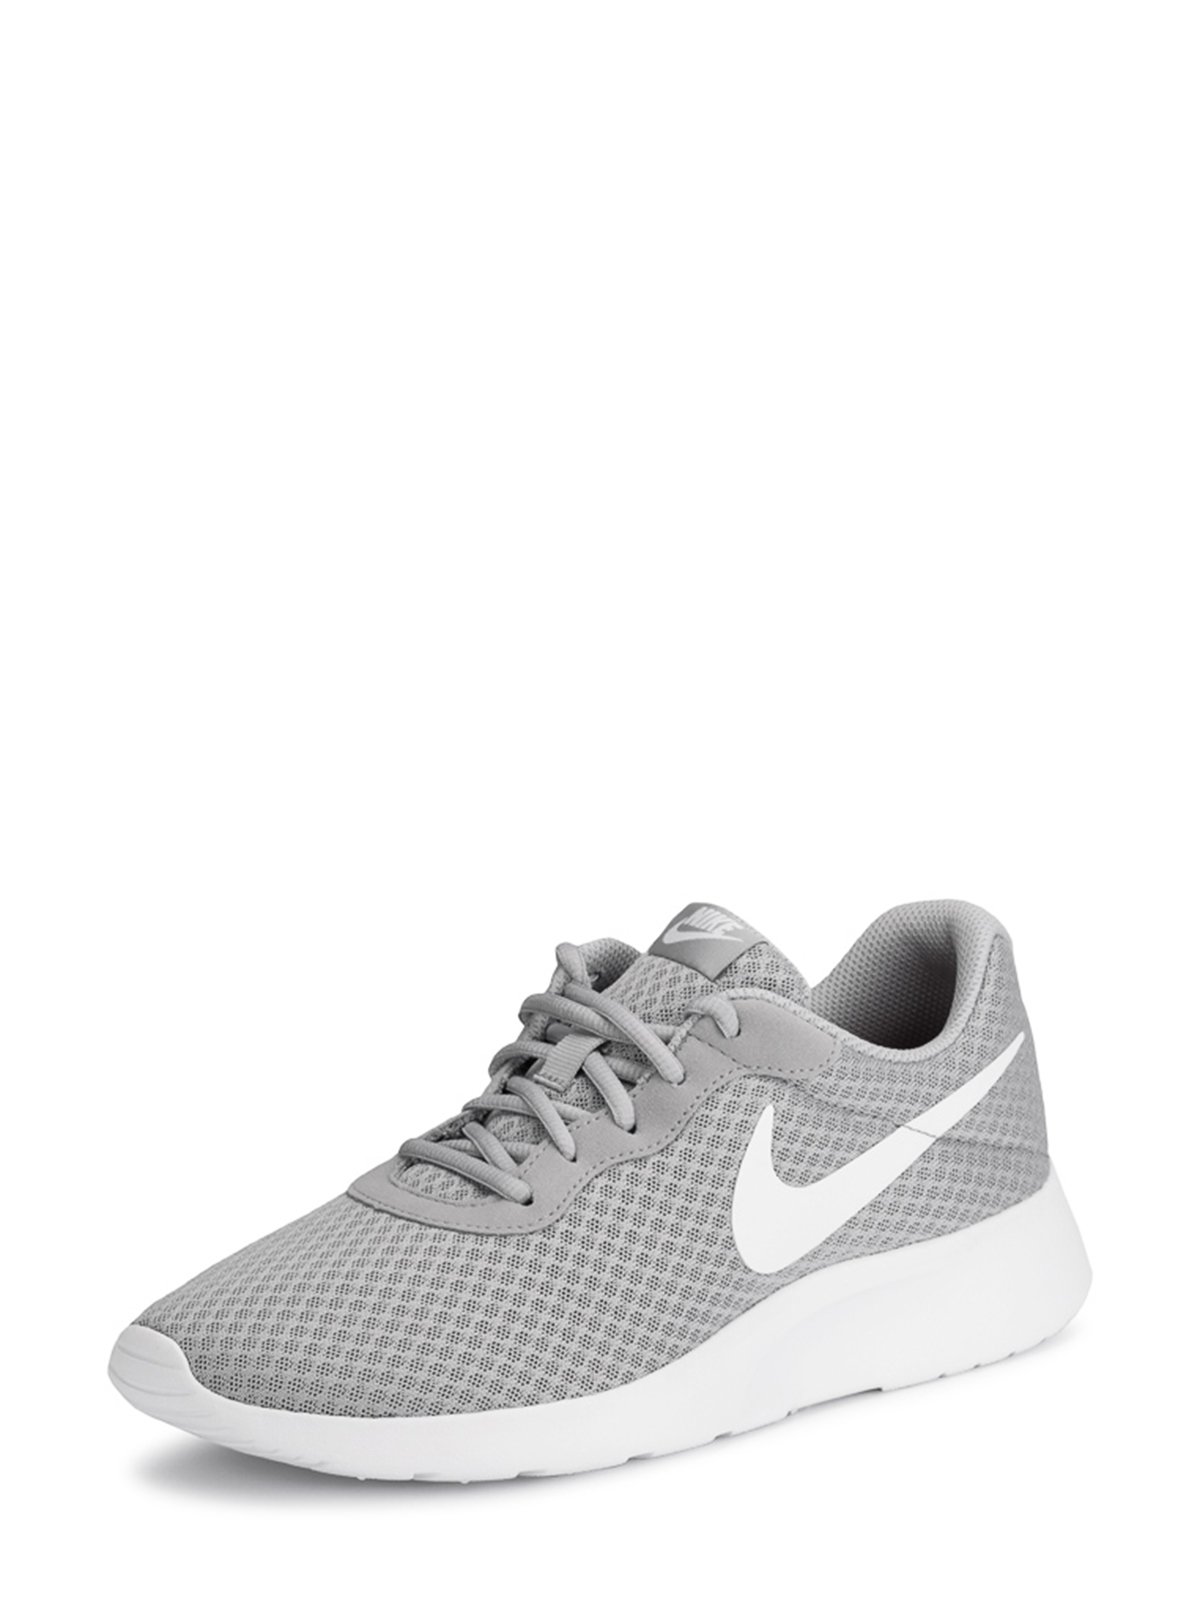 Nike Tanjun Grey